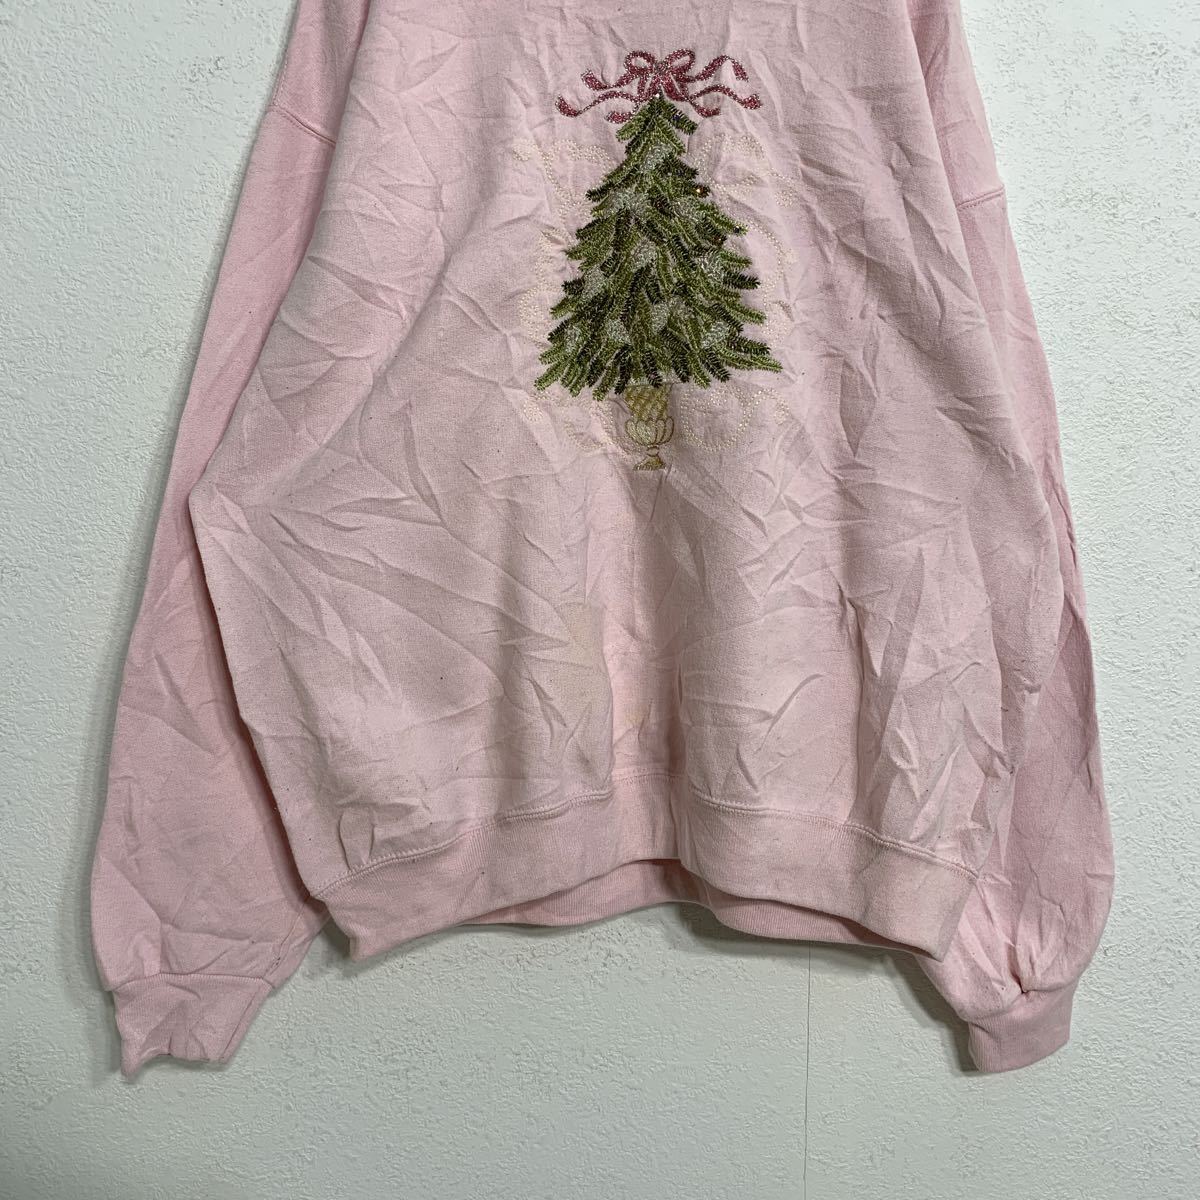 JERZEES тренировочный футболка wi мужской L розовый tree вышивка б/у одежда . America запас a401-5186